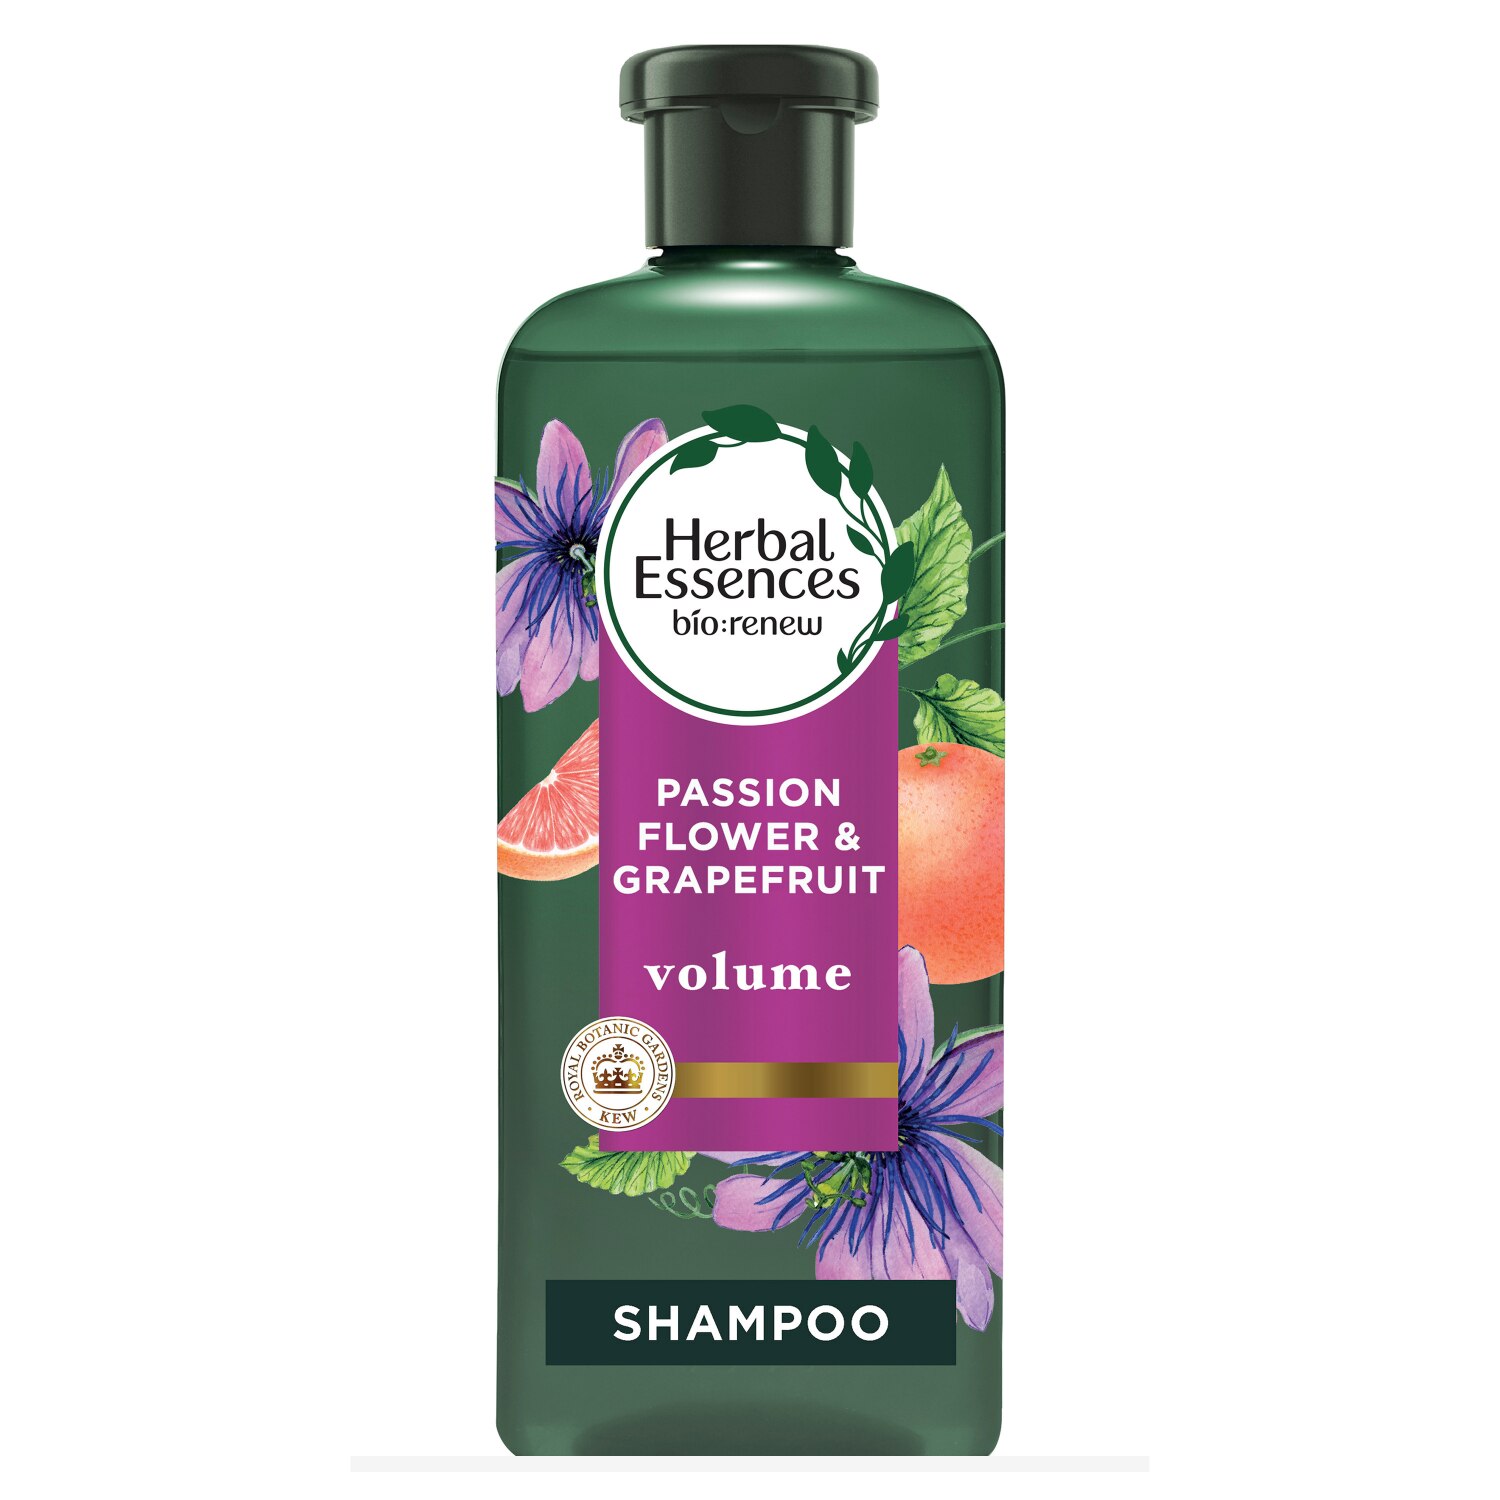 Herbal Essences Passion Flower & Grapefruit Shampoo, 13.5 OZ